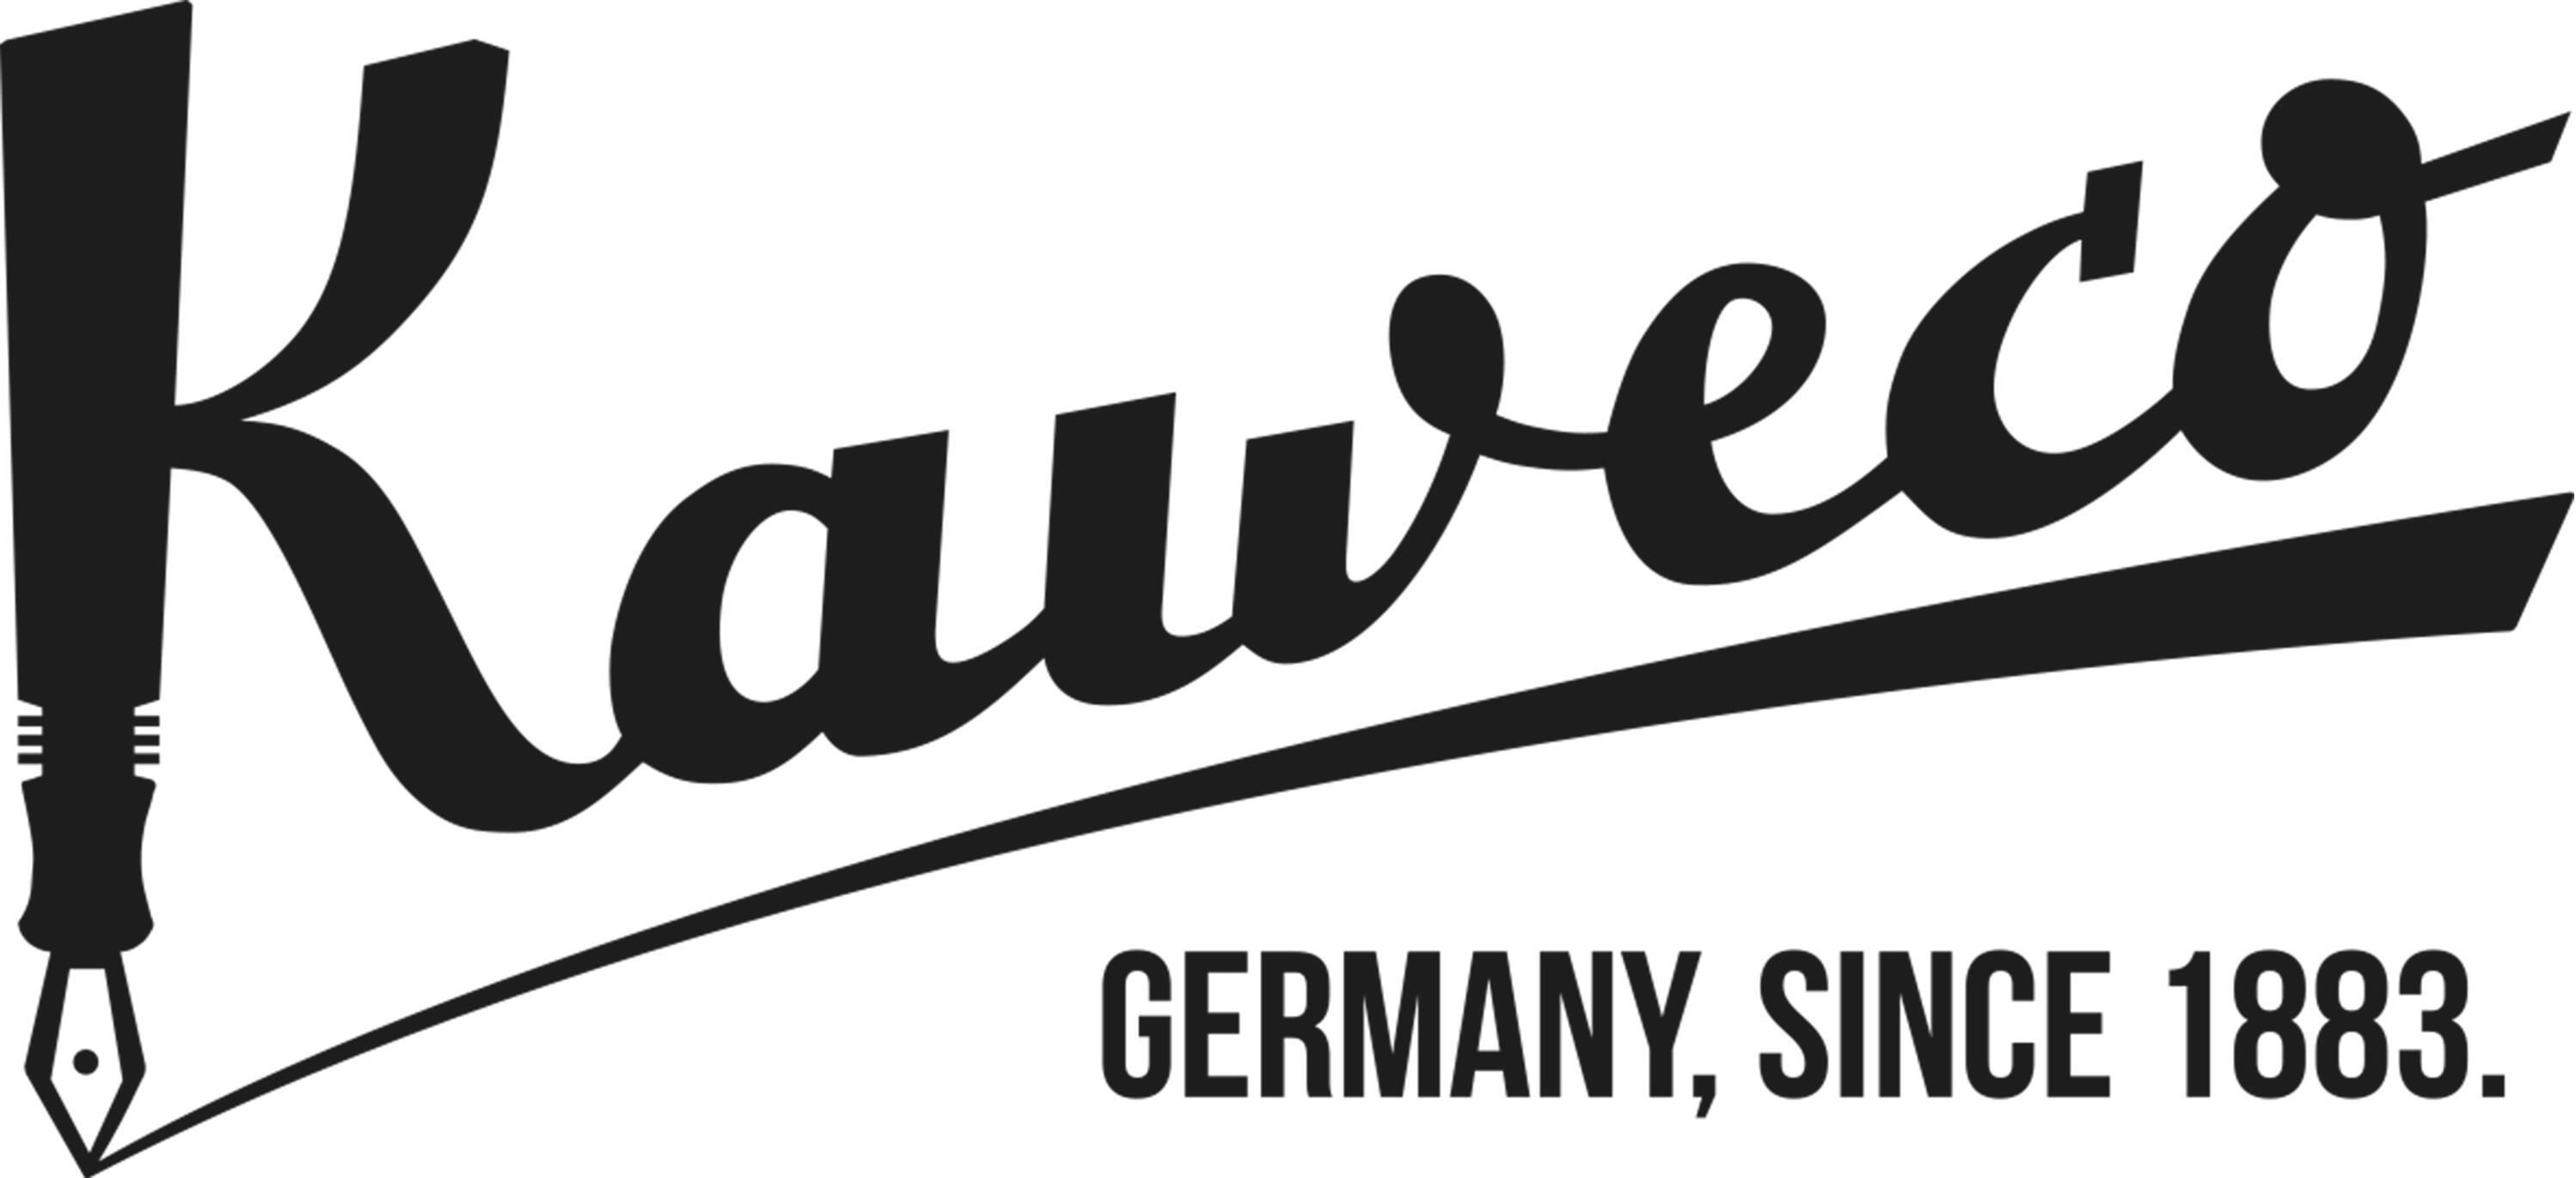 kaweco-logo-black-claim.jpg